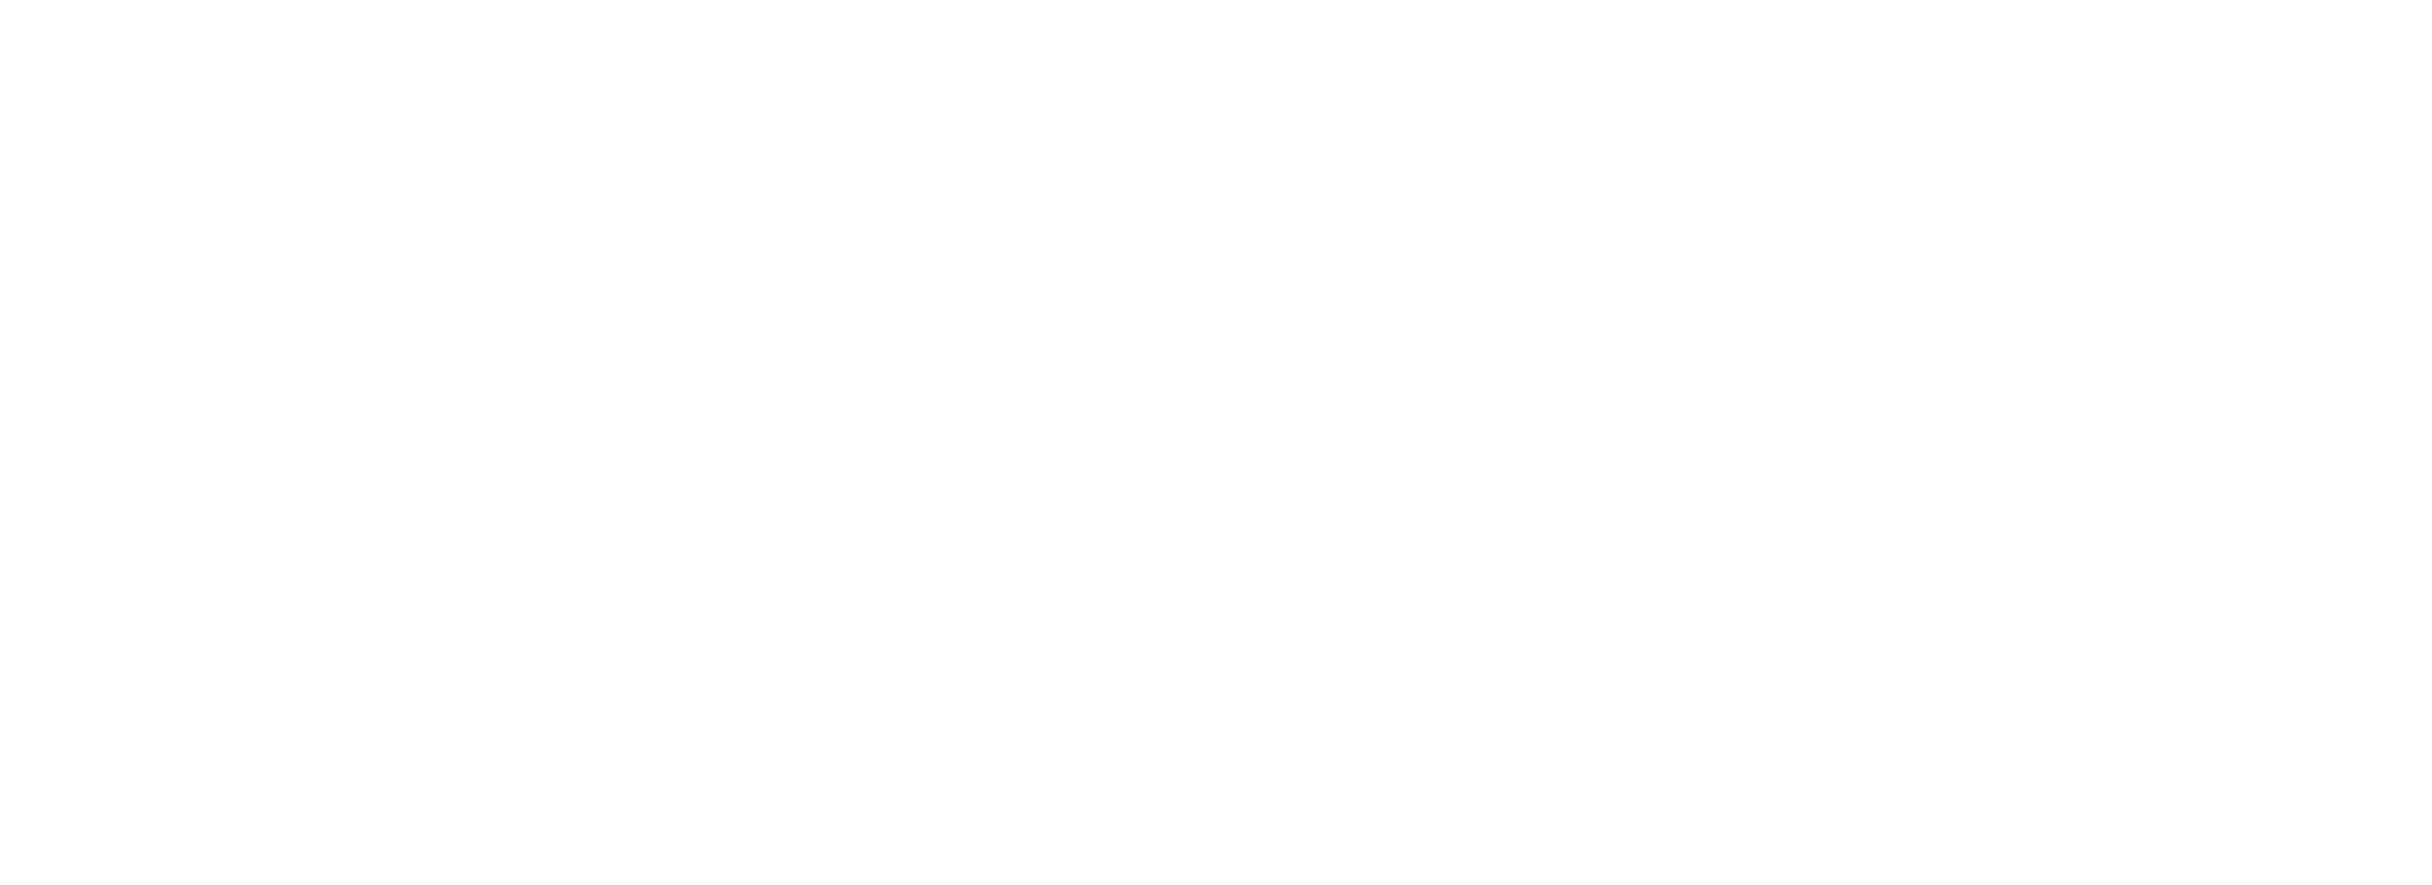 The Golden Boy logo